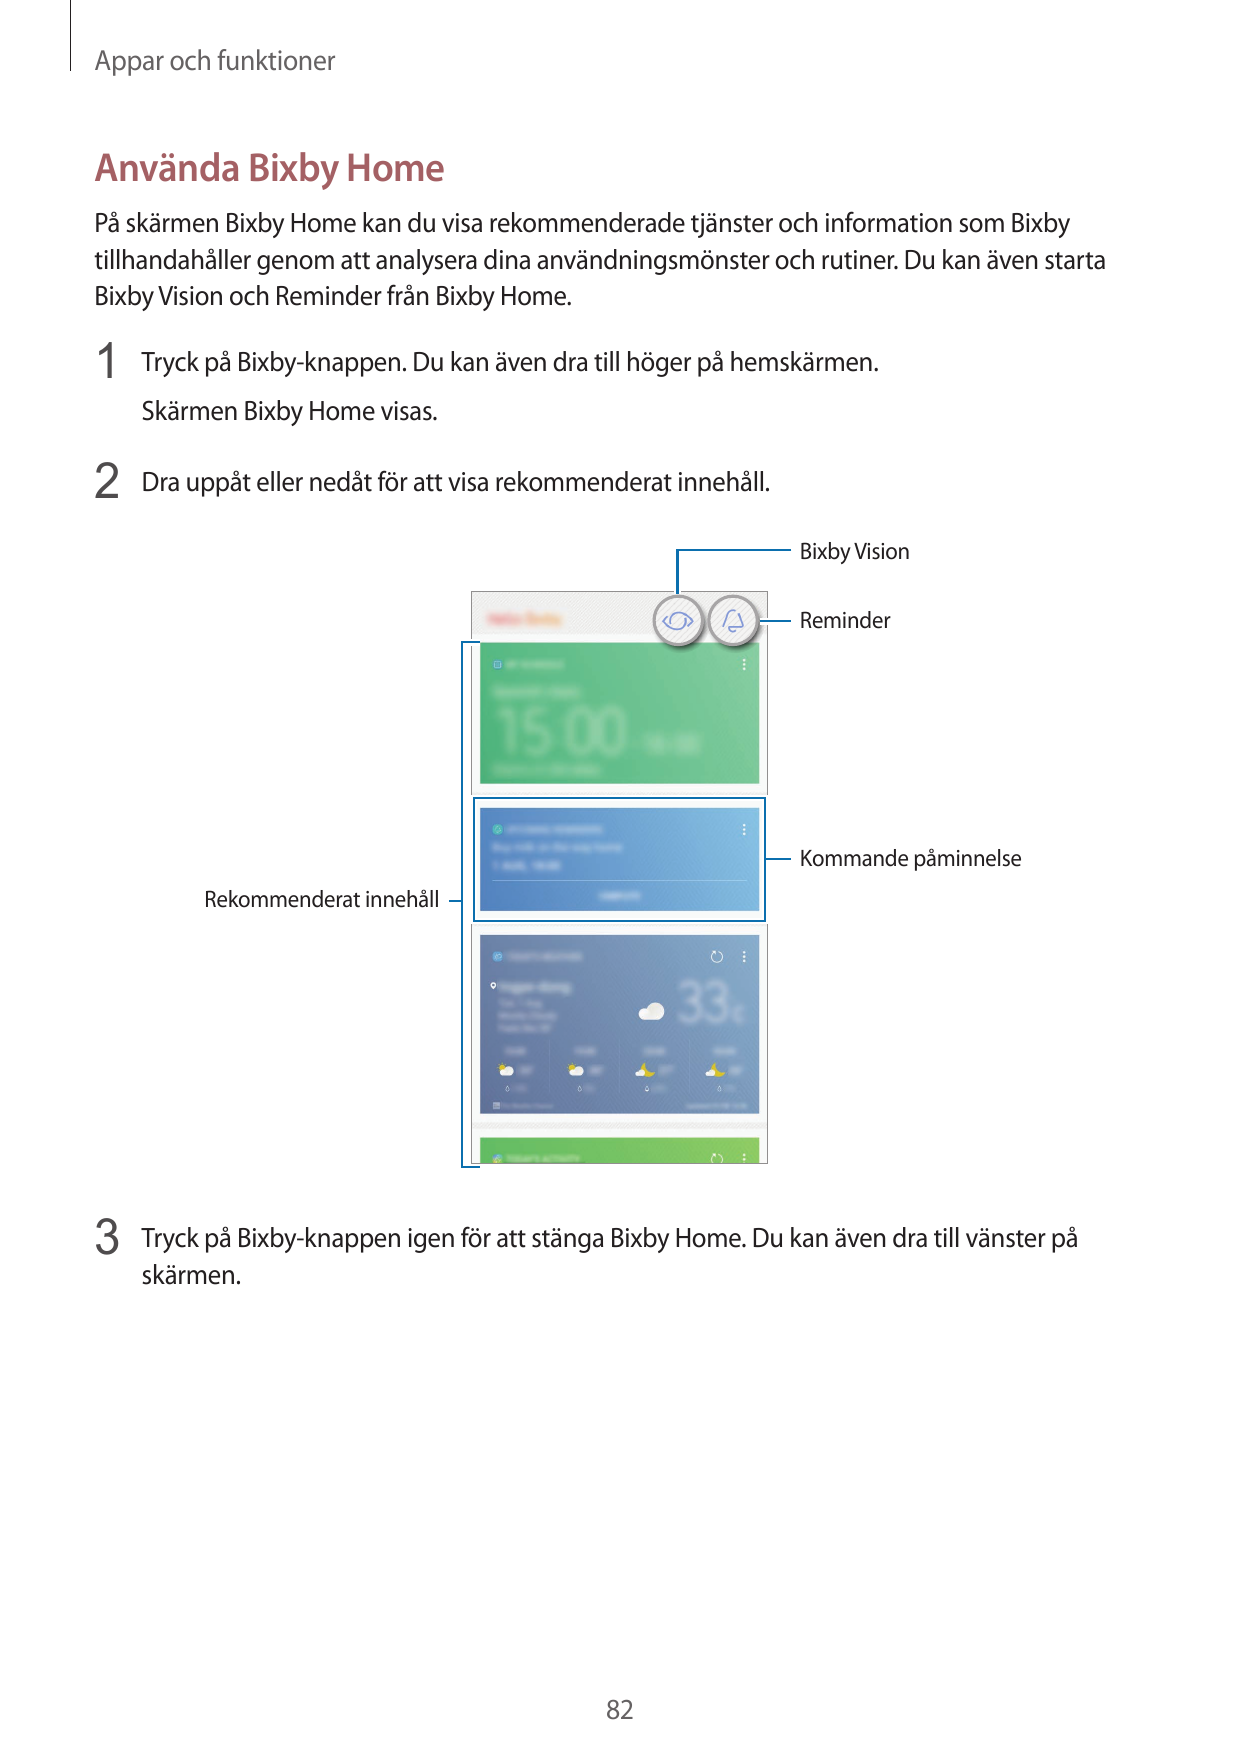 Appar och funktionerAnvända Bixby HomePå skärmen Bixby Home kan du visa rekommenderade tjänster och information som Bixbytillhan